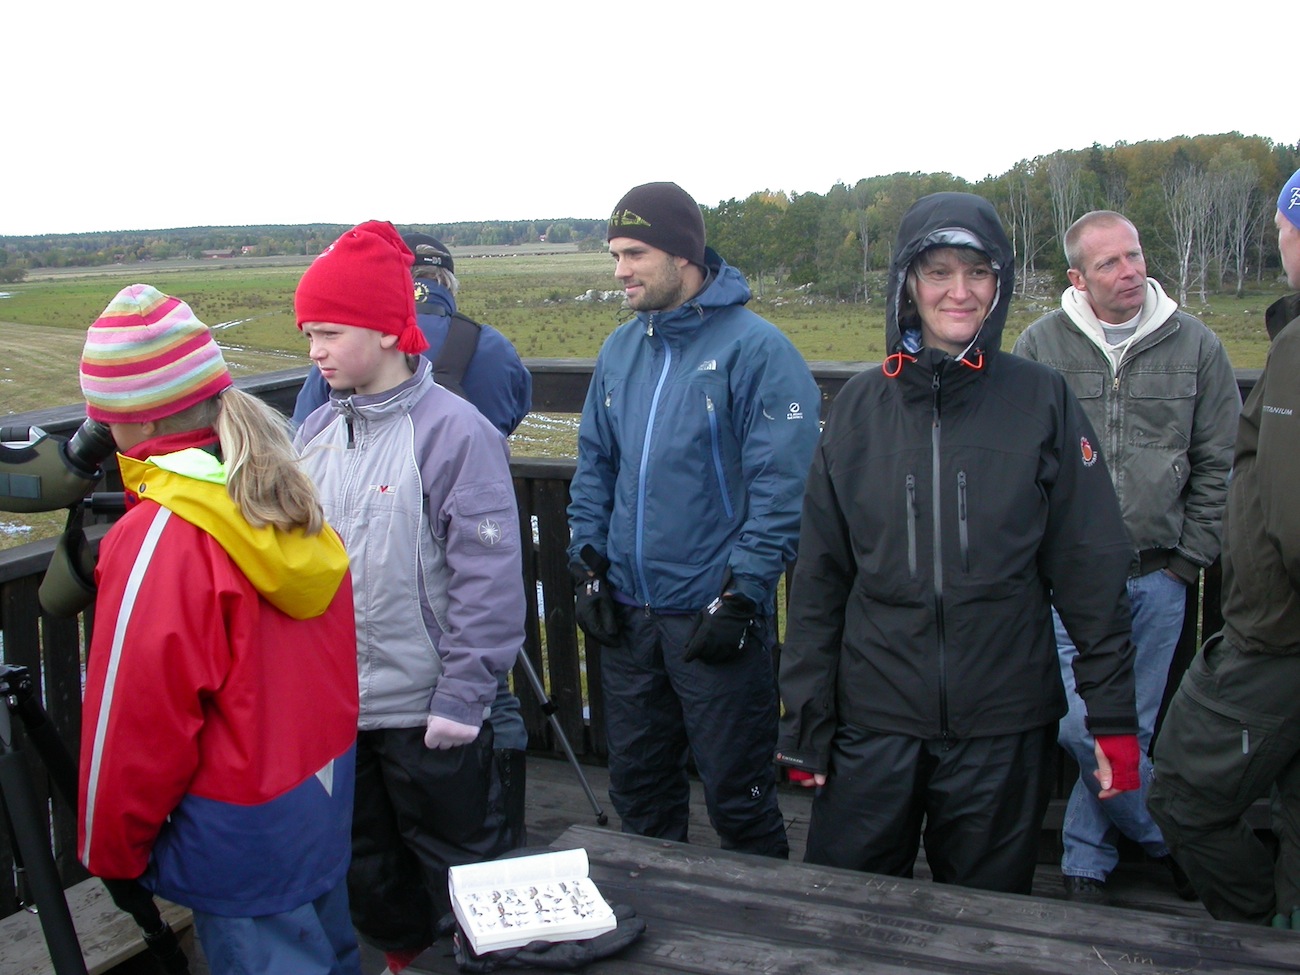 Sedan 1993 har Naturskolan i Asköviken tagit emot elever från trakten och visat dem området. Varje år kommer ungefär 6500 elever. Foto: Torbjörn Hegedüs